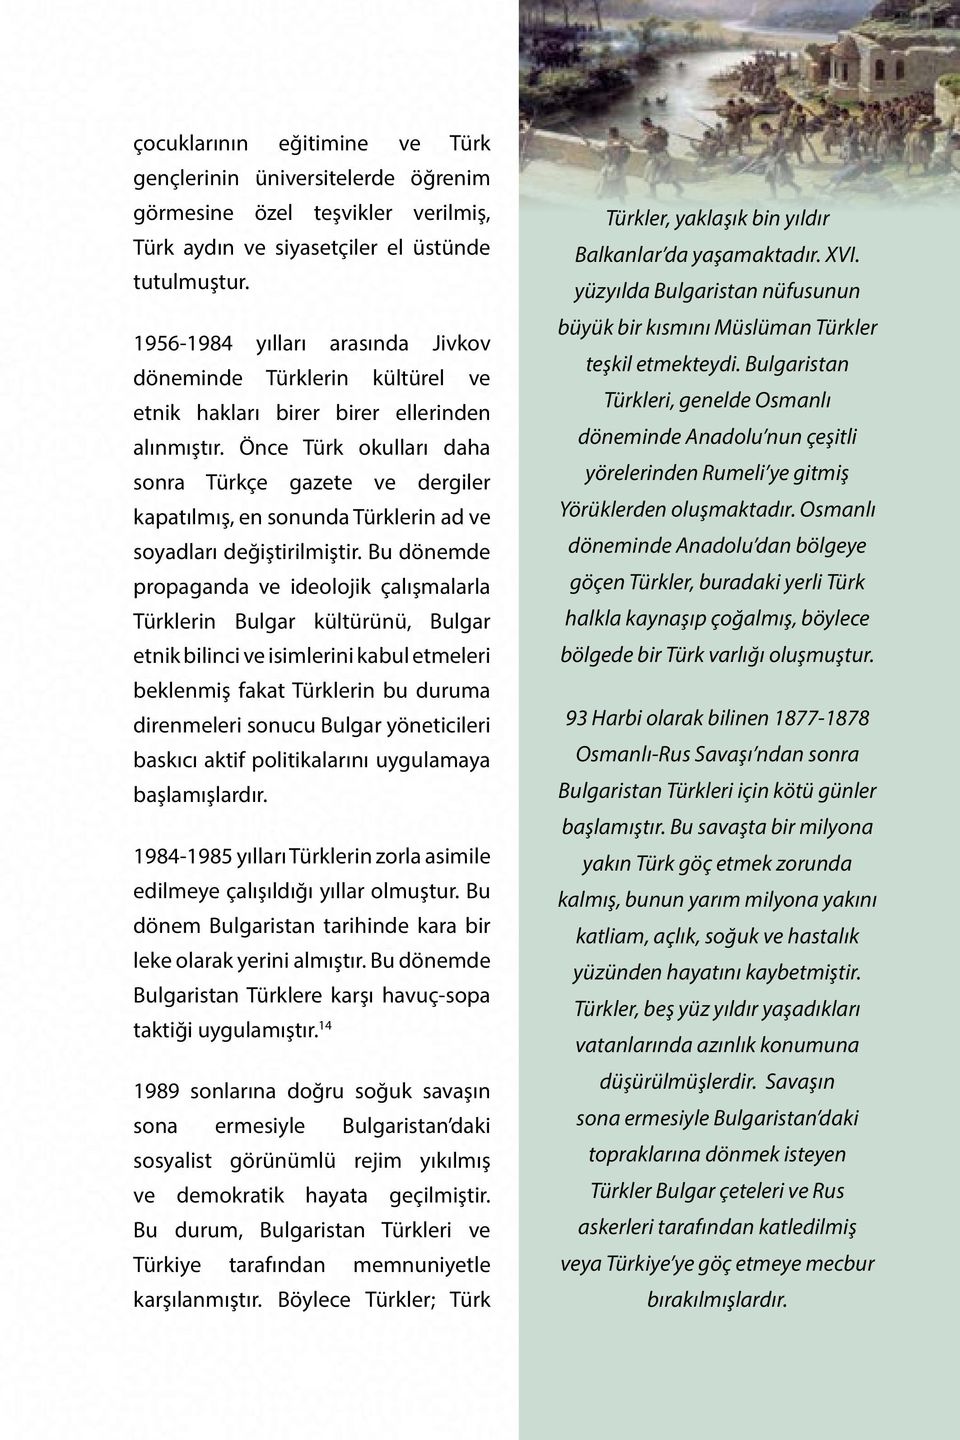 Önce Türk okulları daha sonra Türkçe gazete ve dergiler kapatılmış, en sonunda Türklerin ad ve soyadları değiştirilmiştir.